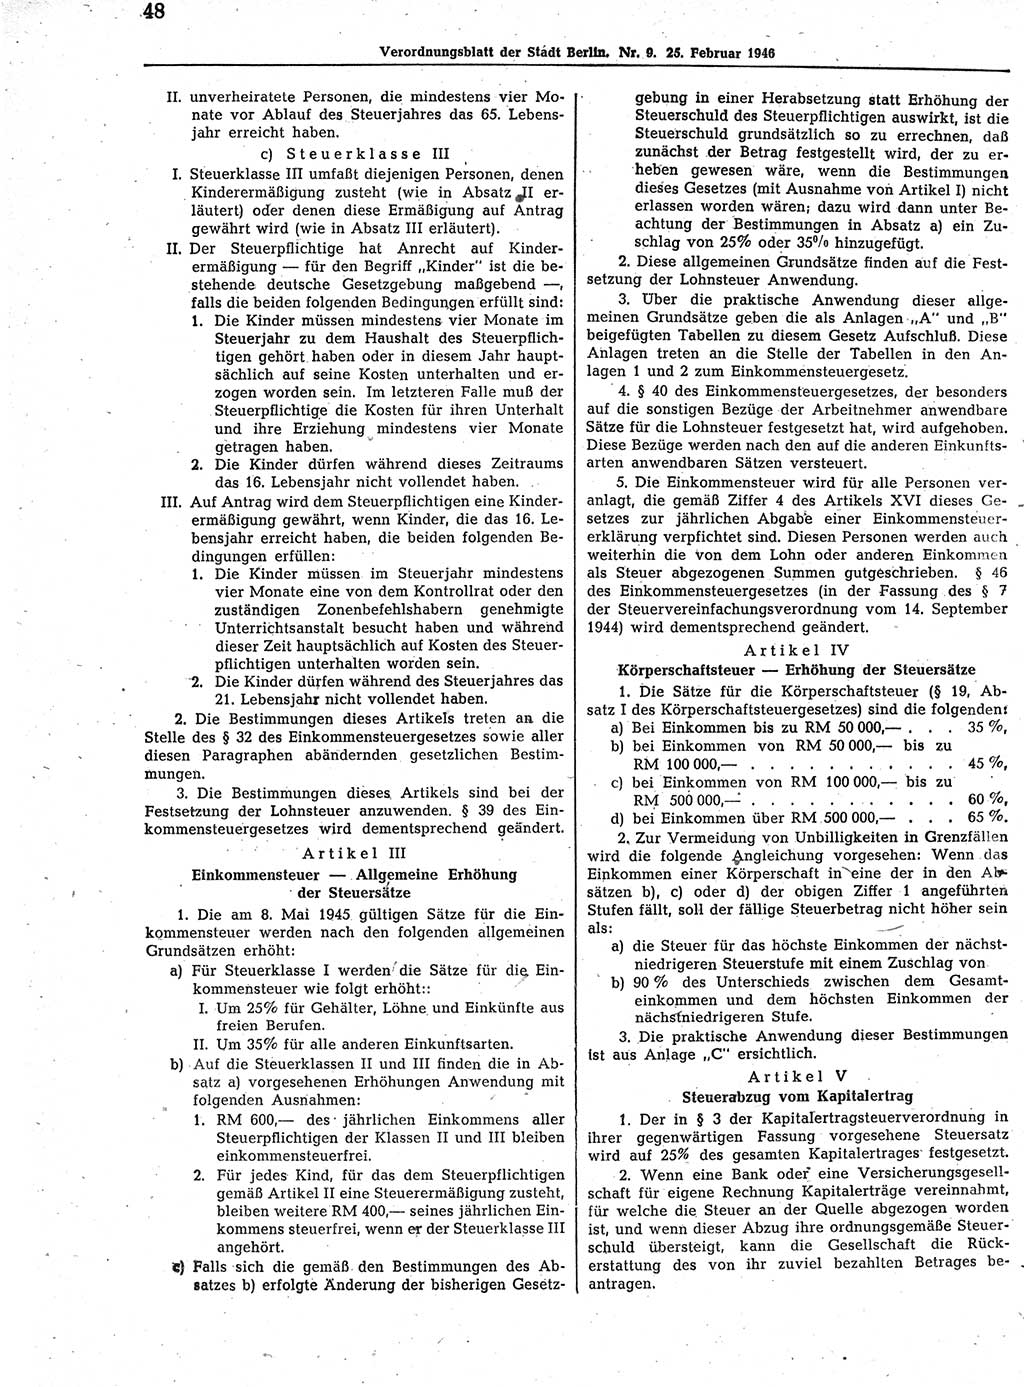 Verordnungsblatt (VOBl.) der Stadt Berlin, für Groß-Berlin 1946, Seite 48 (VOBl. Bln. 1946, S. 48)